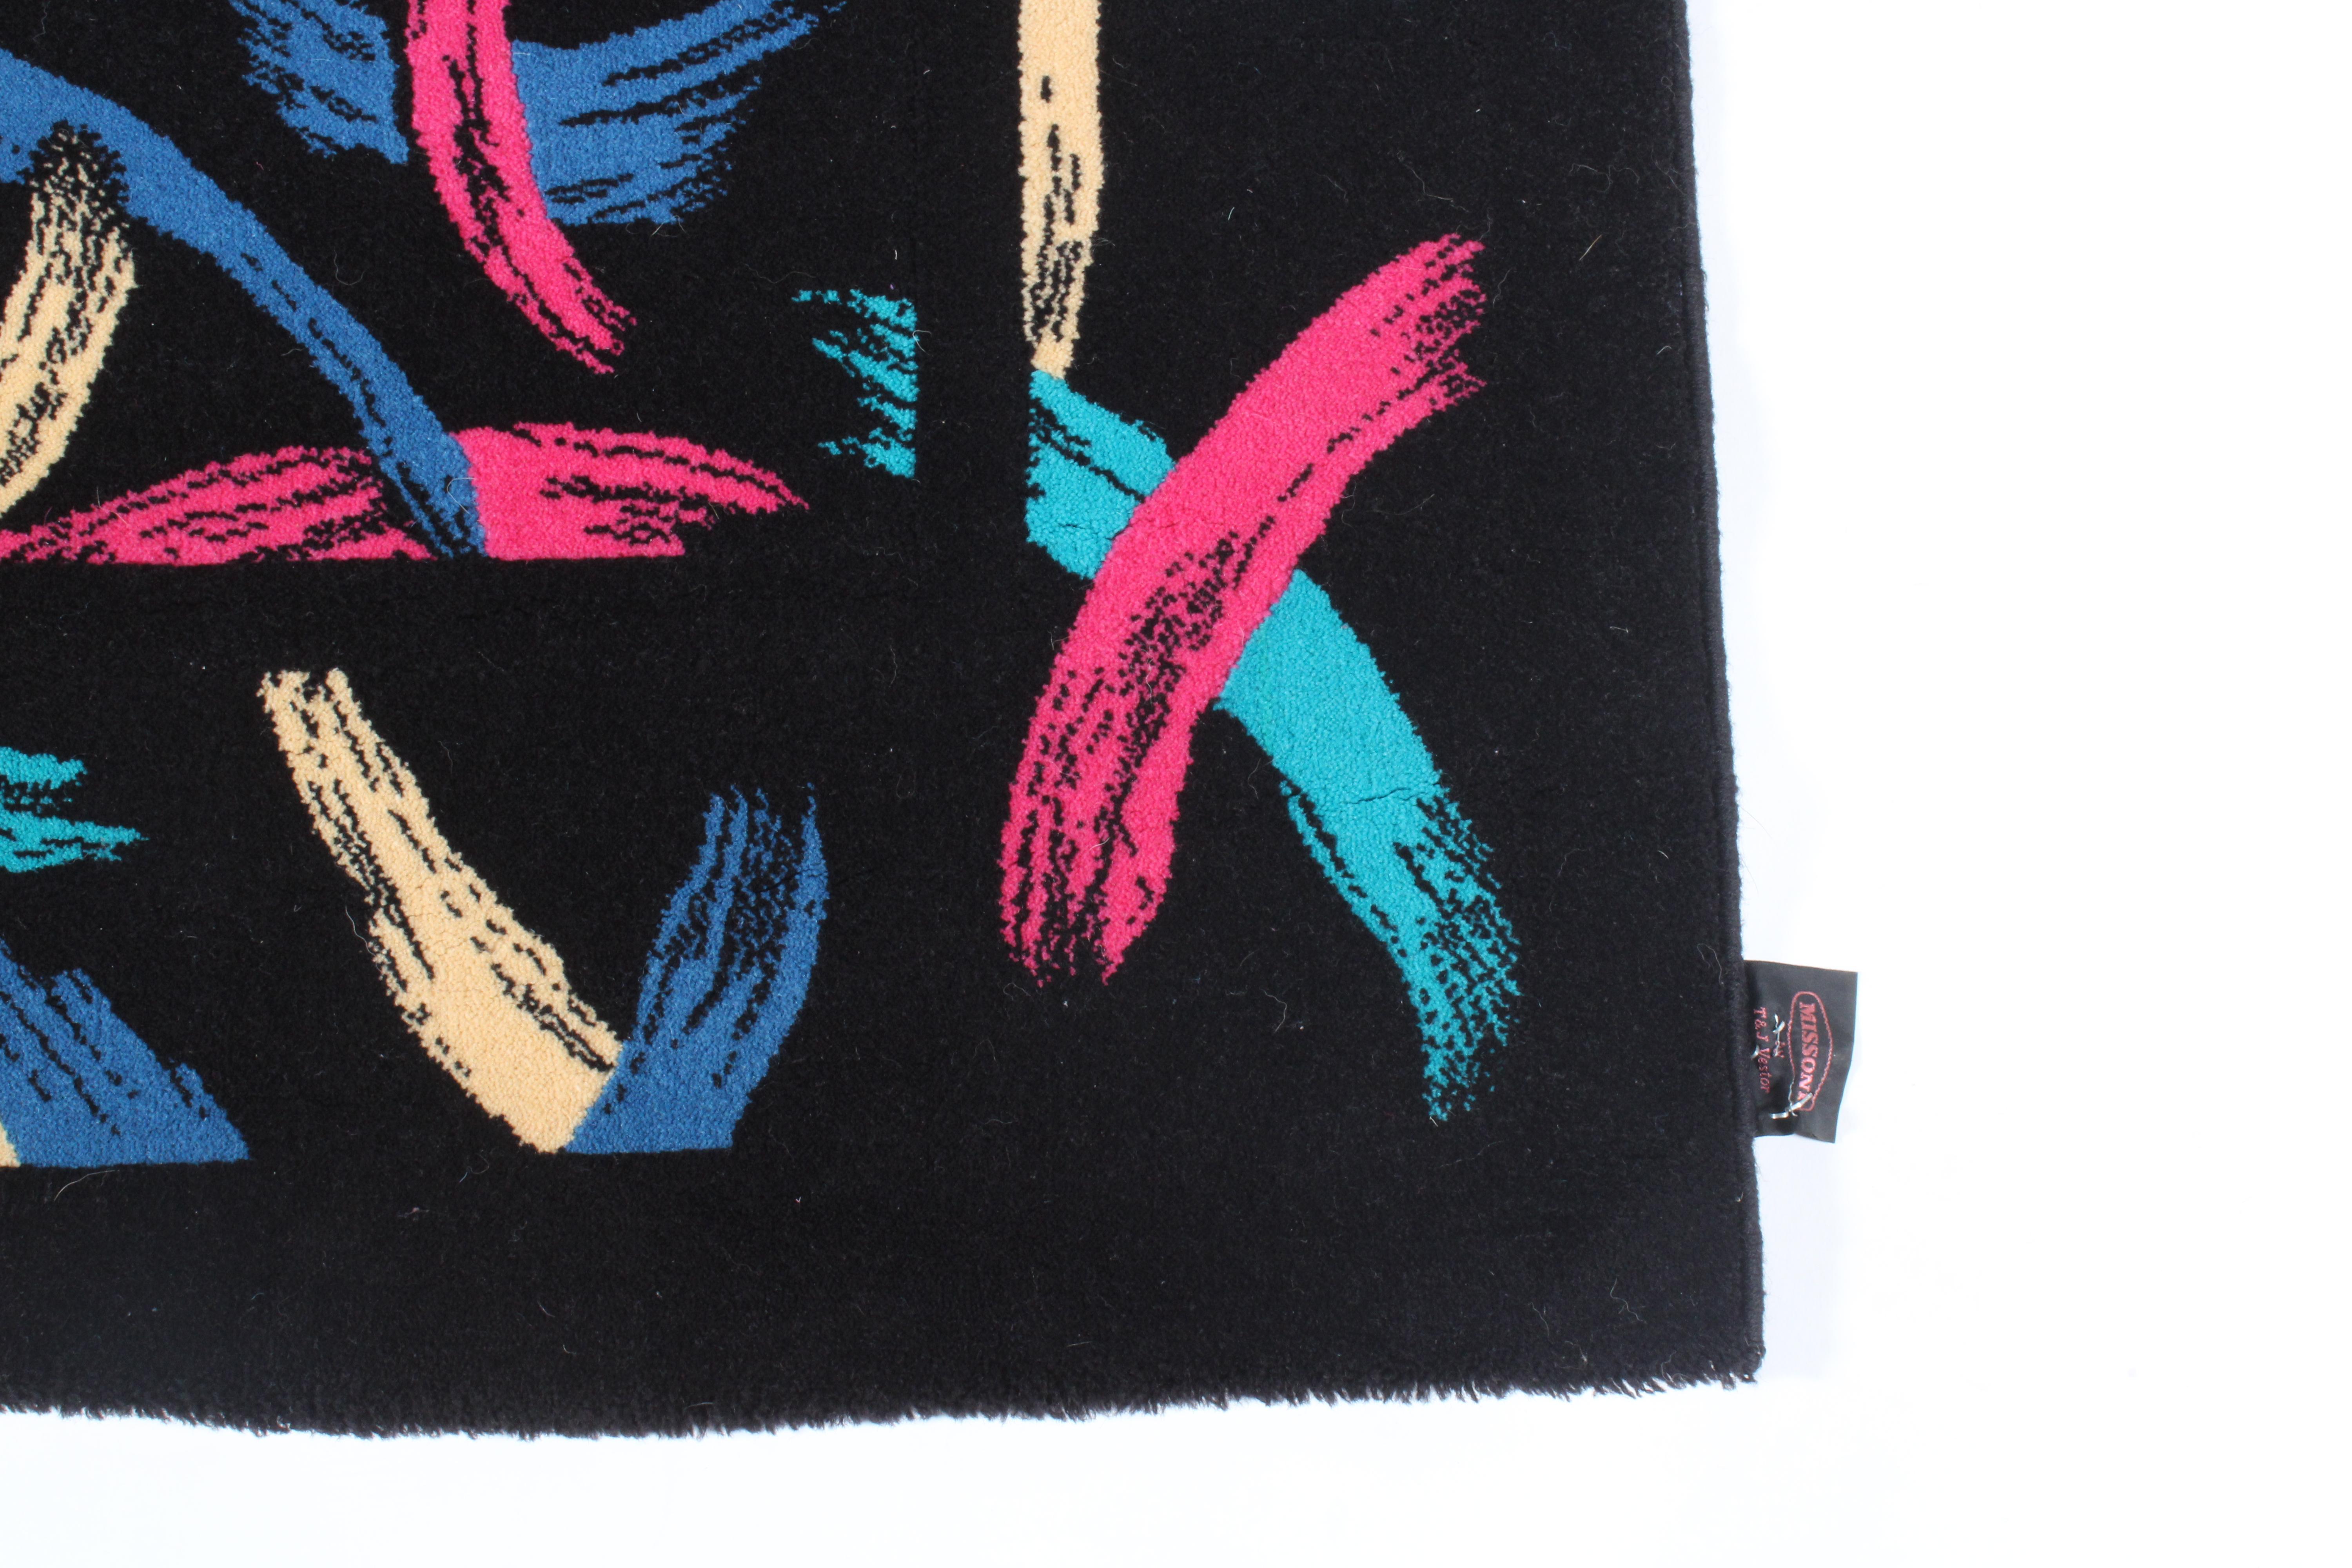 Verblüffender Vintage-Teppich von Missoni, entworfen von T & J Vestor. Das Kleidungsstück aus reiner Wolle wurde professionell gereinigt und befindet sich in einem ausgezeichneten Vintage-Zustand.  Auffällige organische Formen in lebhaftem Blau,